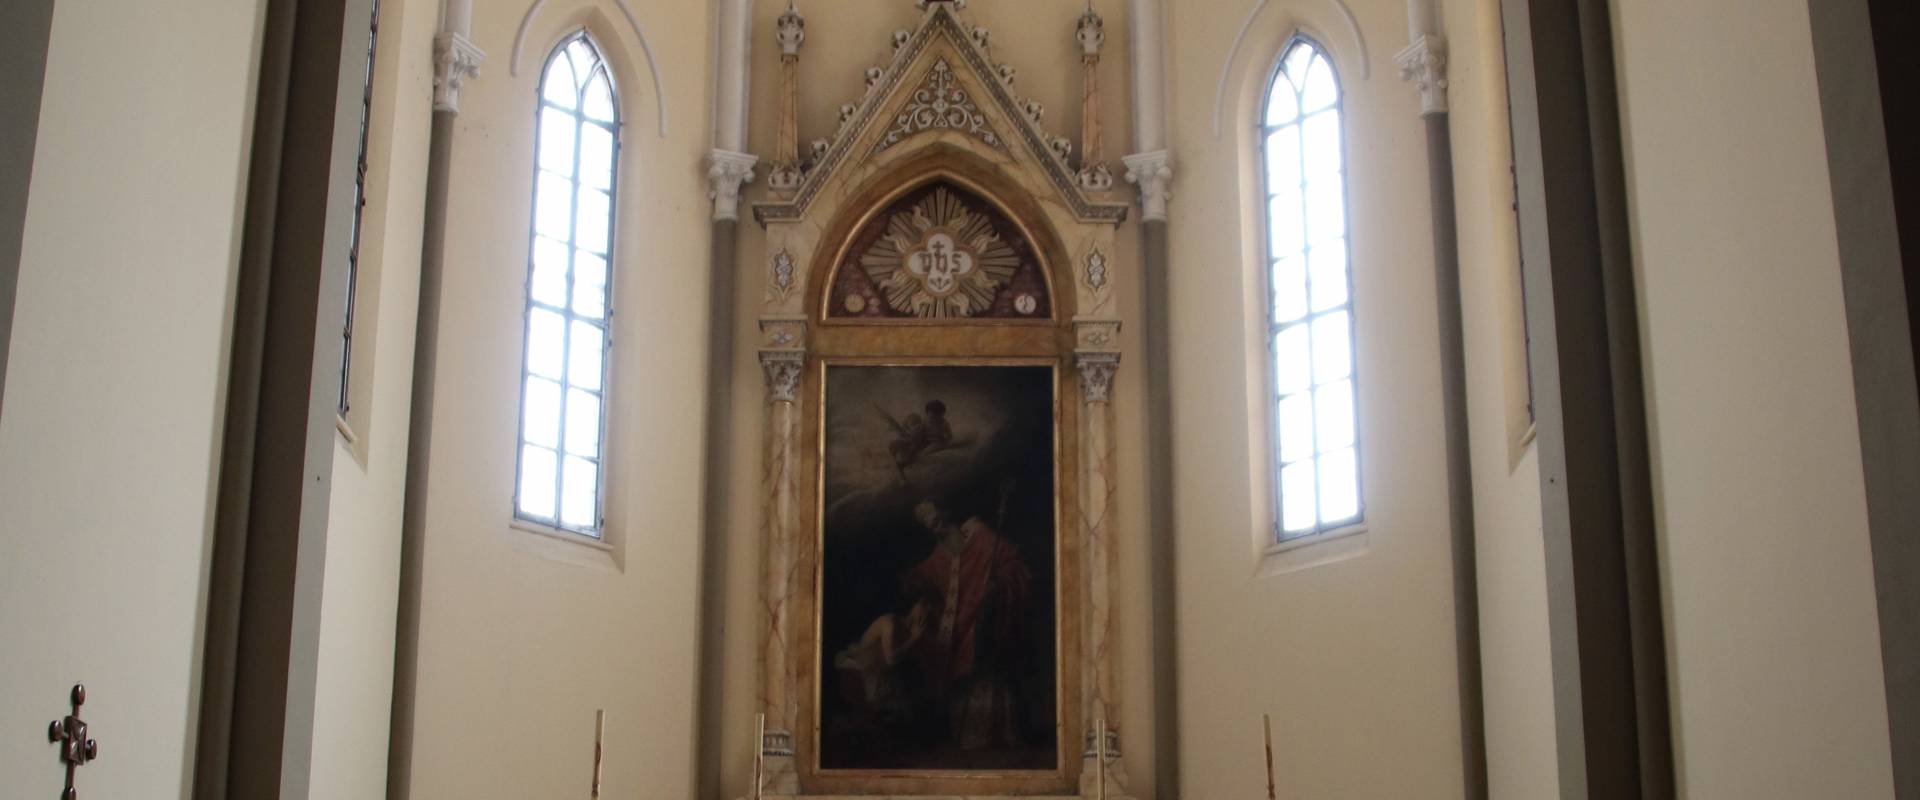 Chiesa dei Santi Senesio e Teopompo (Castelvetro di Modena), altare maggiore 01 photo by Mongolo1984